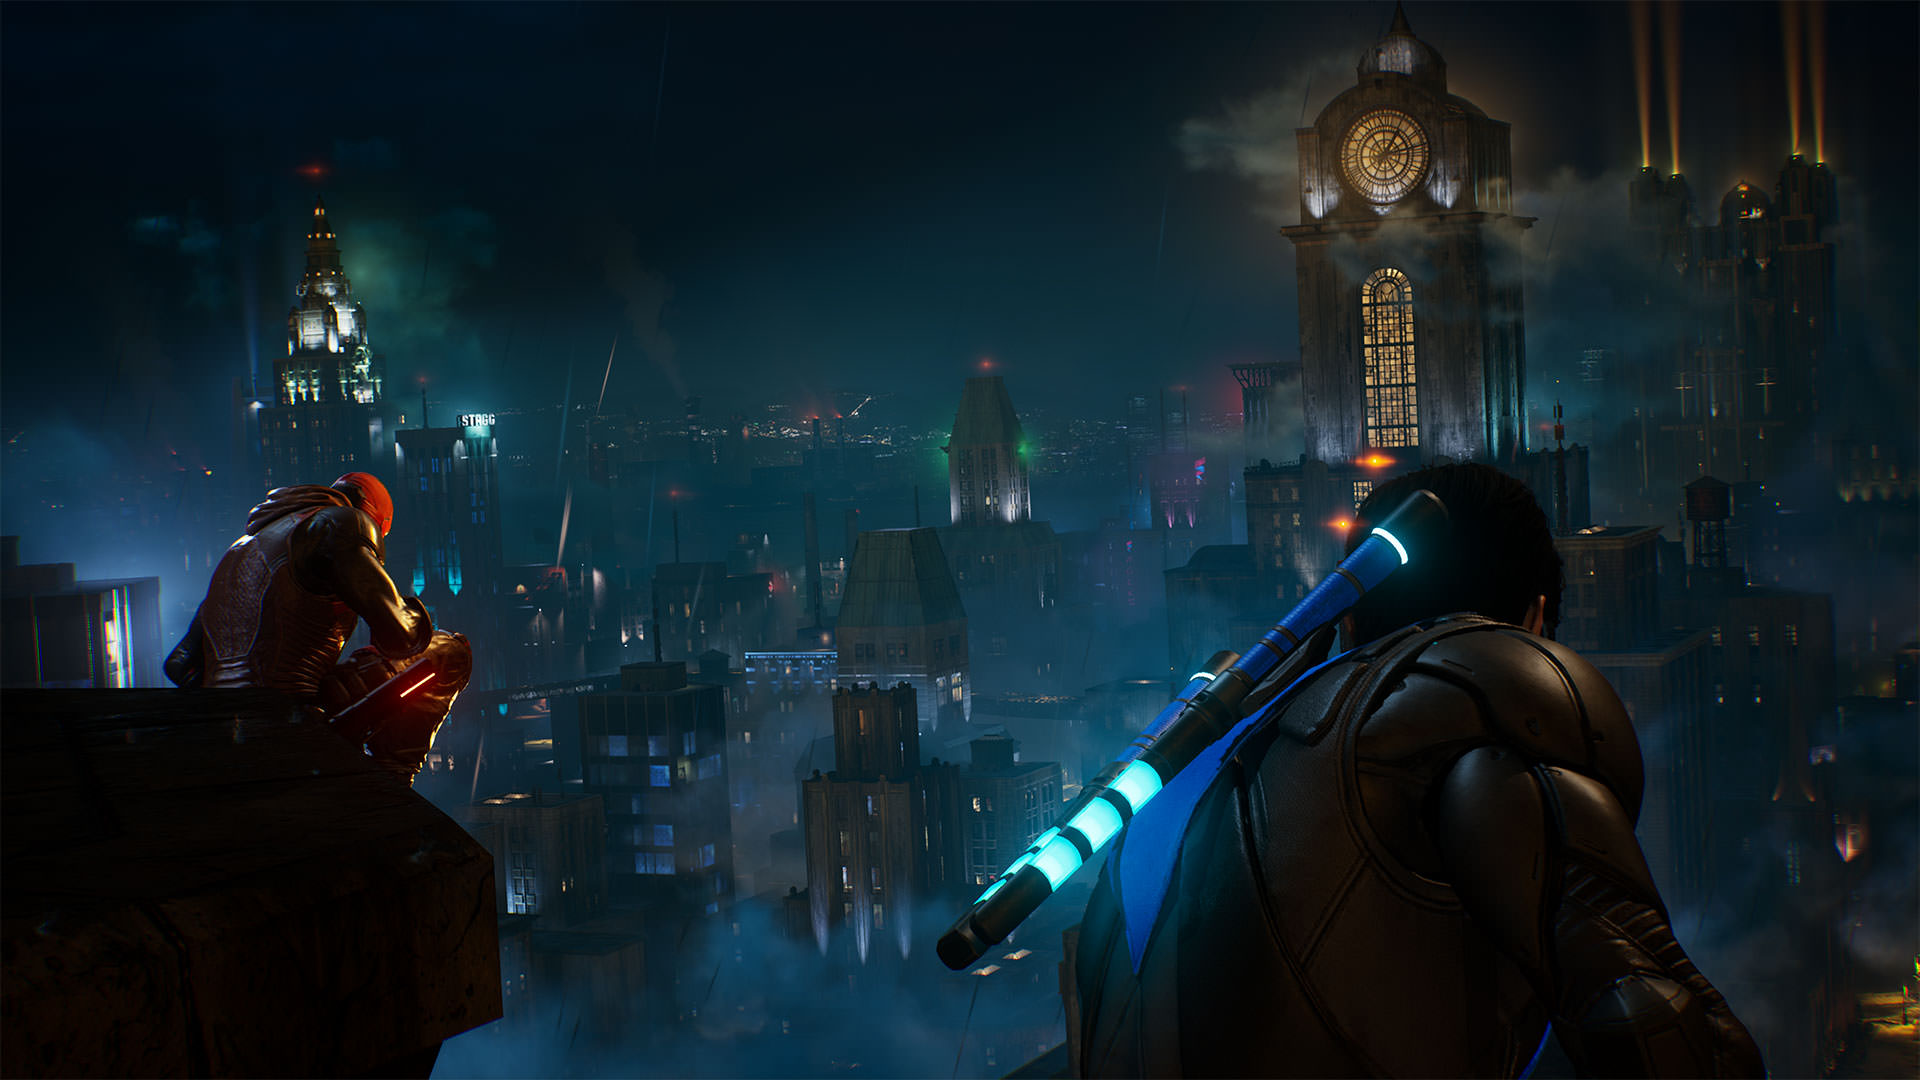 استودیوی مونترال برادران وارنر به تشریح جزئیات حالت Co-op بازی Gotham Knights پرداخت